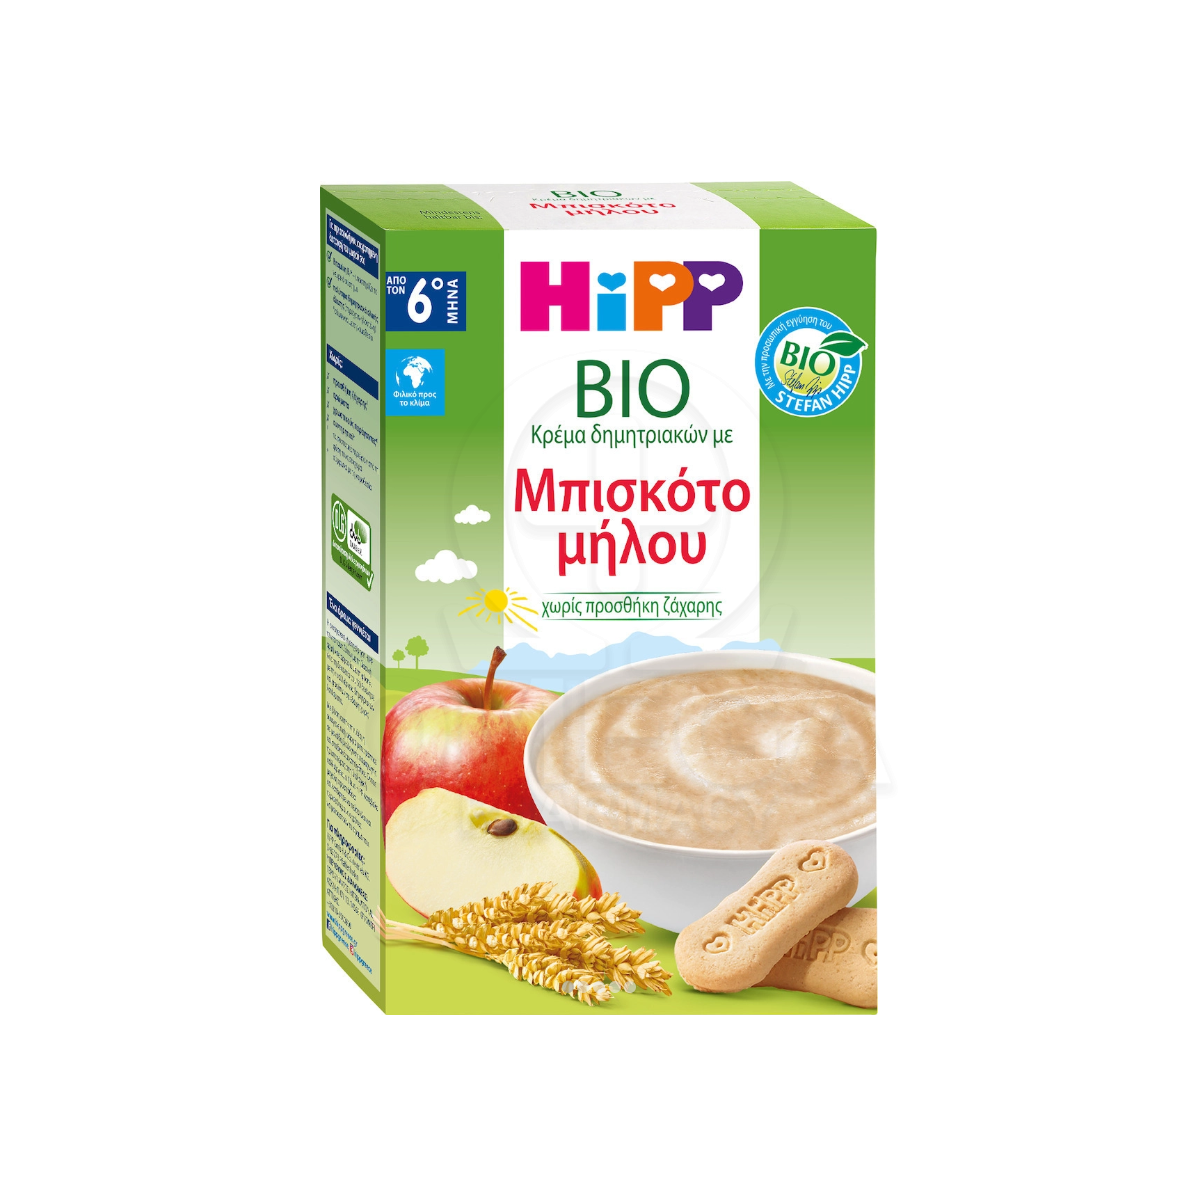 HIPP Βιολογική Βρεφική Κρέμα Δημητριακών με Μπισκότο Μήλου 6m+ 250gr